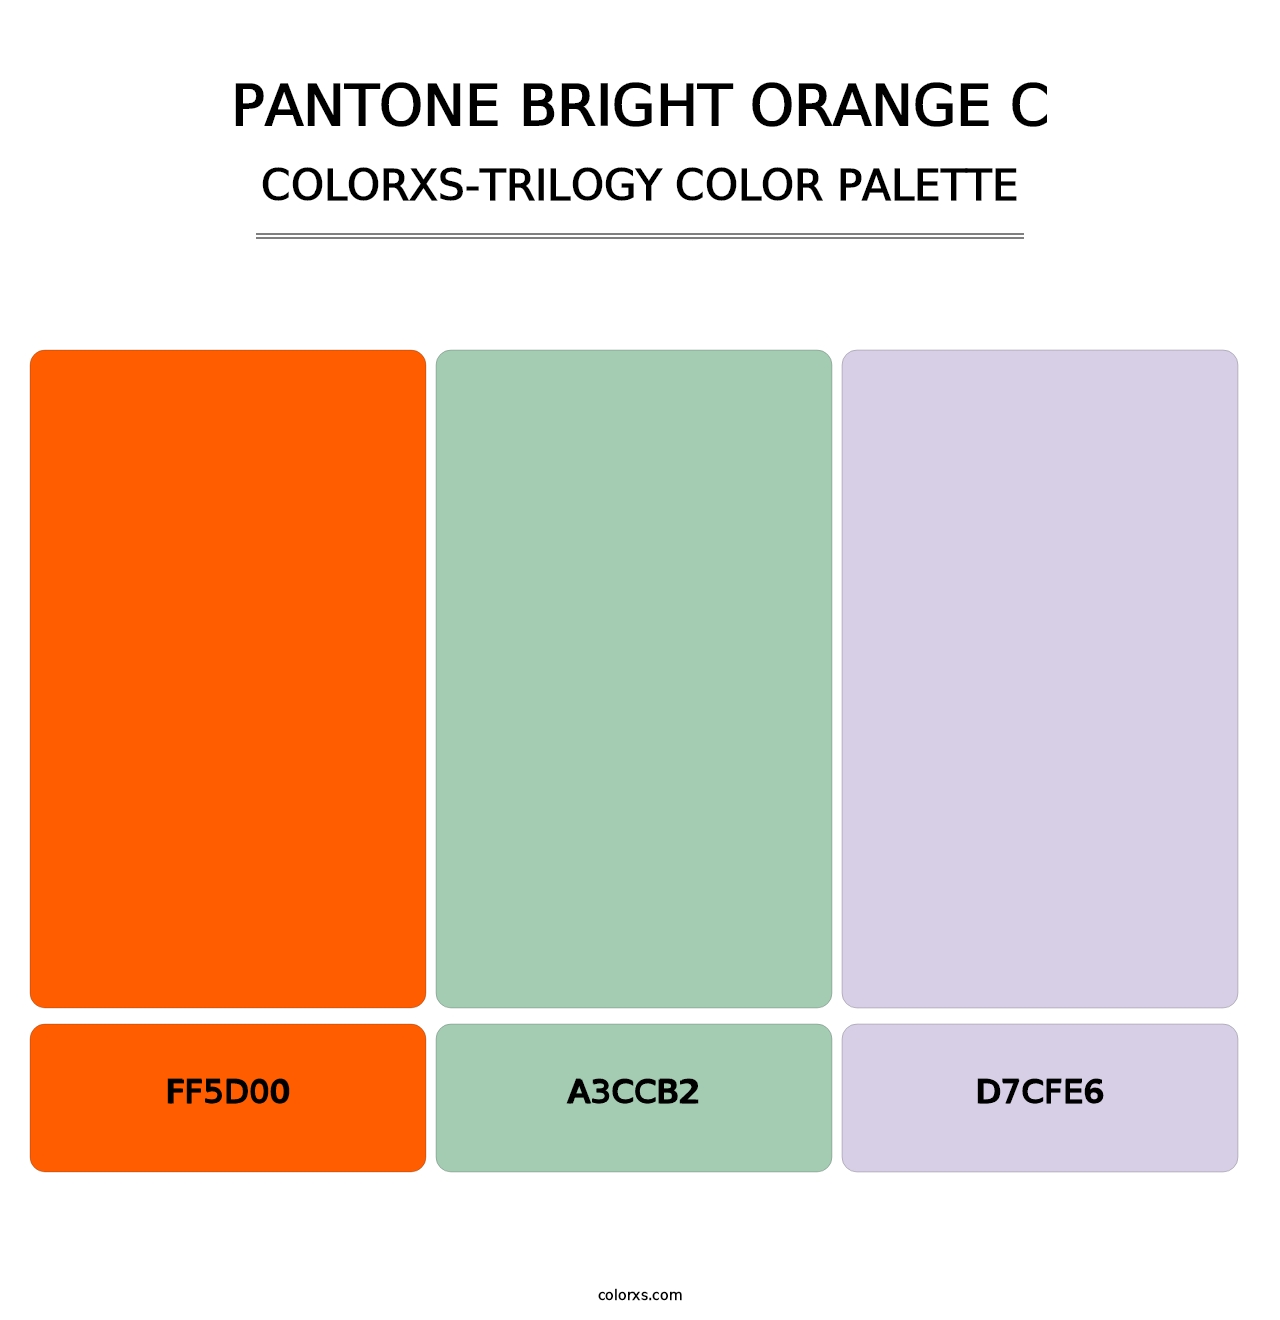 PANTONE Bright Orange C - Colorxs Trilogy Palette